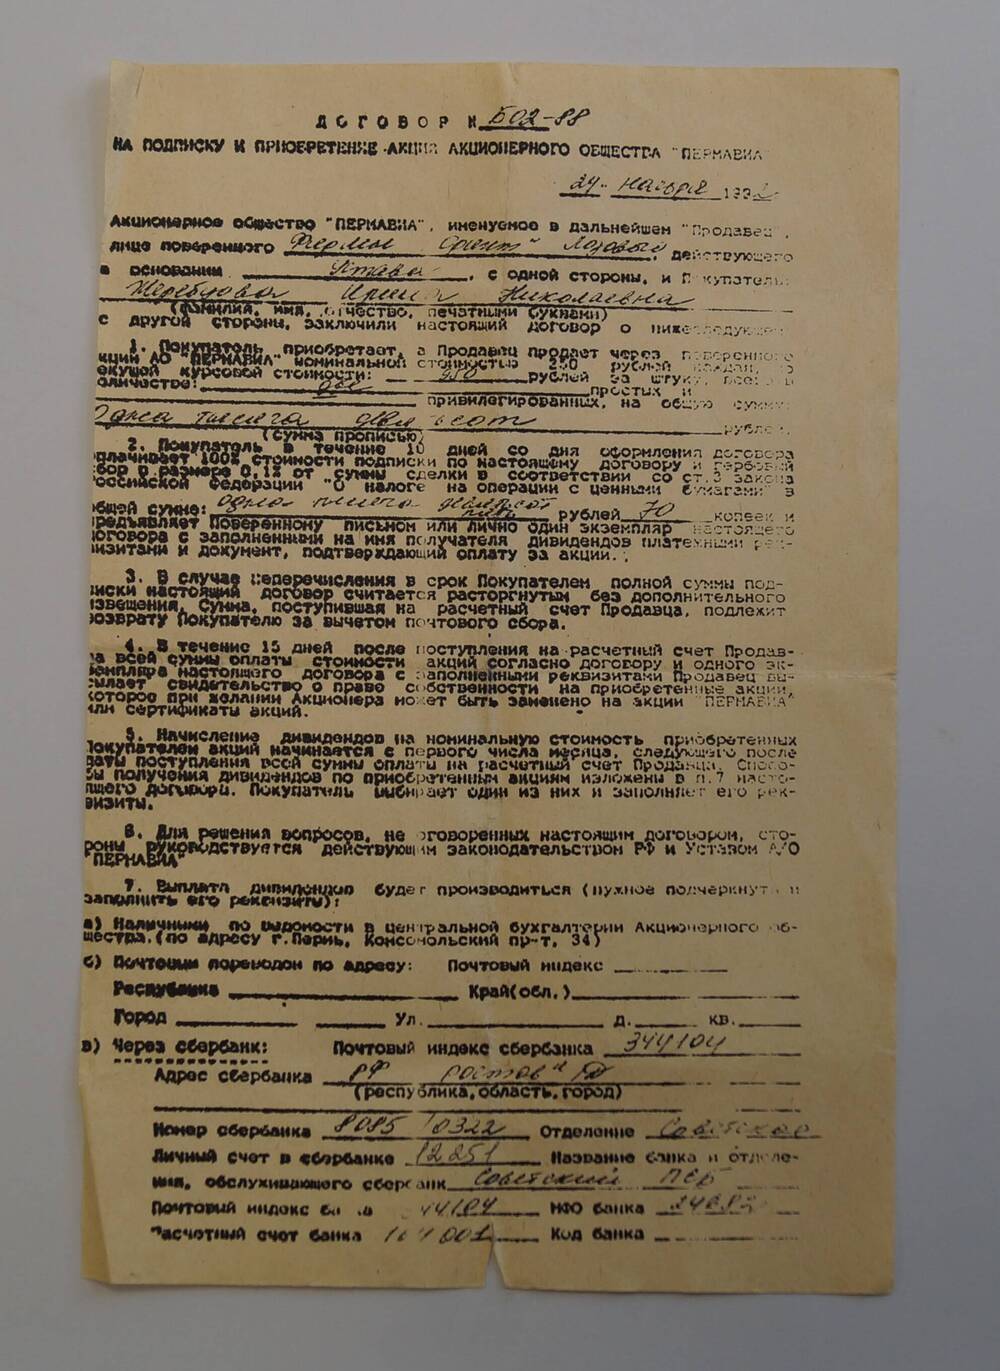 Договор № 602-88 на подписку и приобретение акций Акционерного общества Пермавиа (копия).